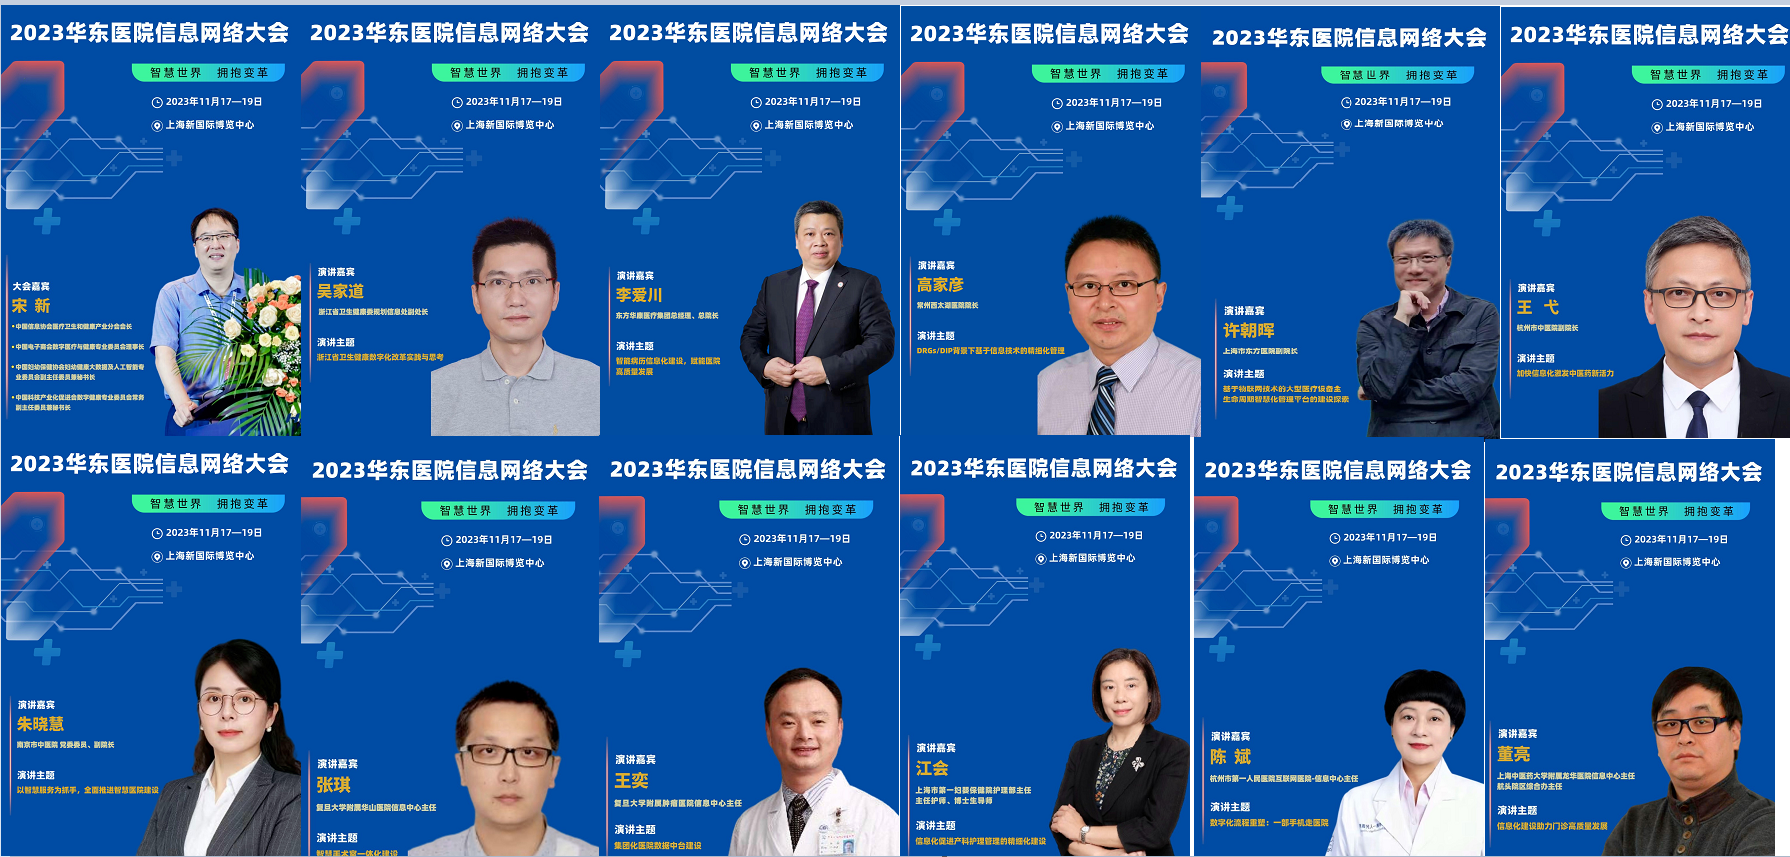 2023华东医院信息网络大会第二轮通知